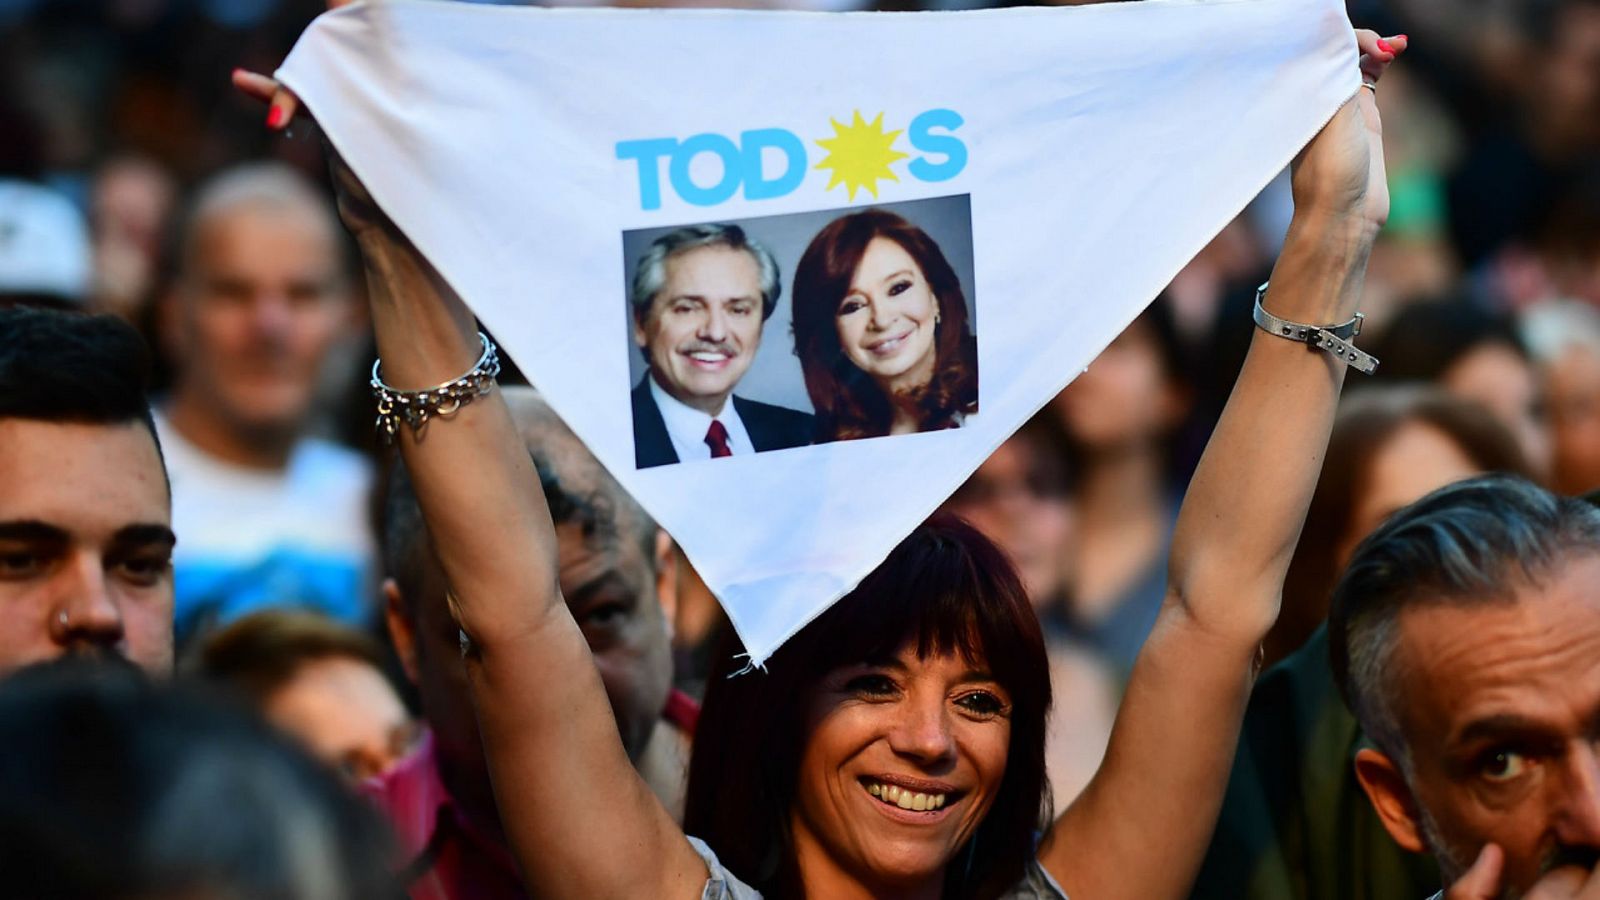 24 horas fin de semana - El peronismo volverá a la casa Rosada por el respaldo electoral a Alberto Fernández - Escuchar ahora